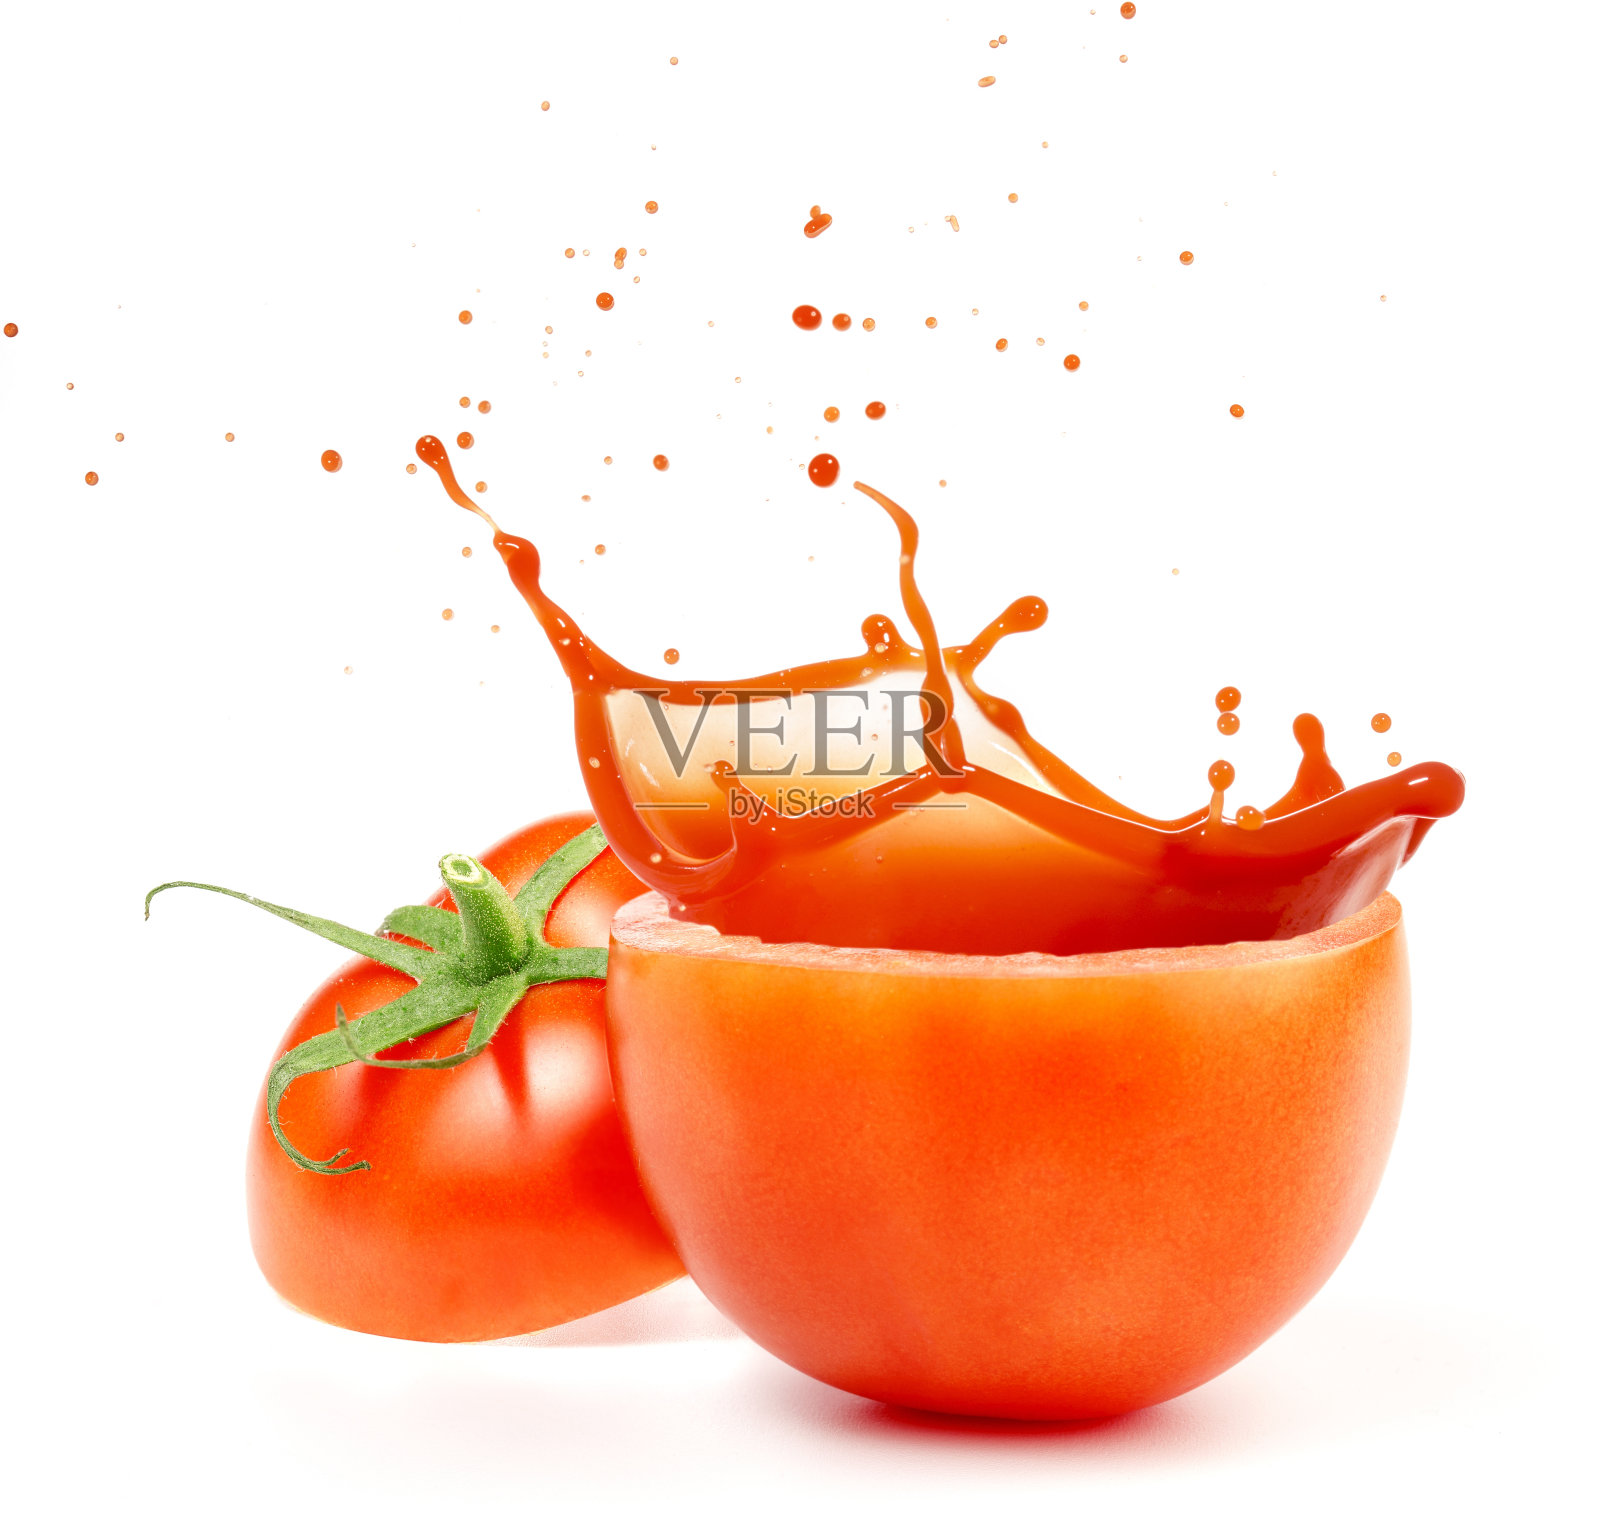 溅出的番茄汁孤立在白色背景照片摄影图片